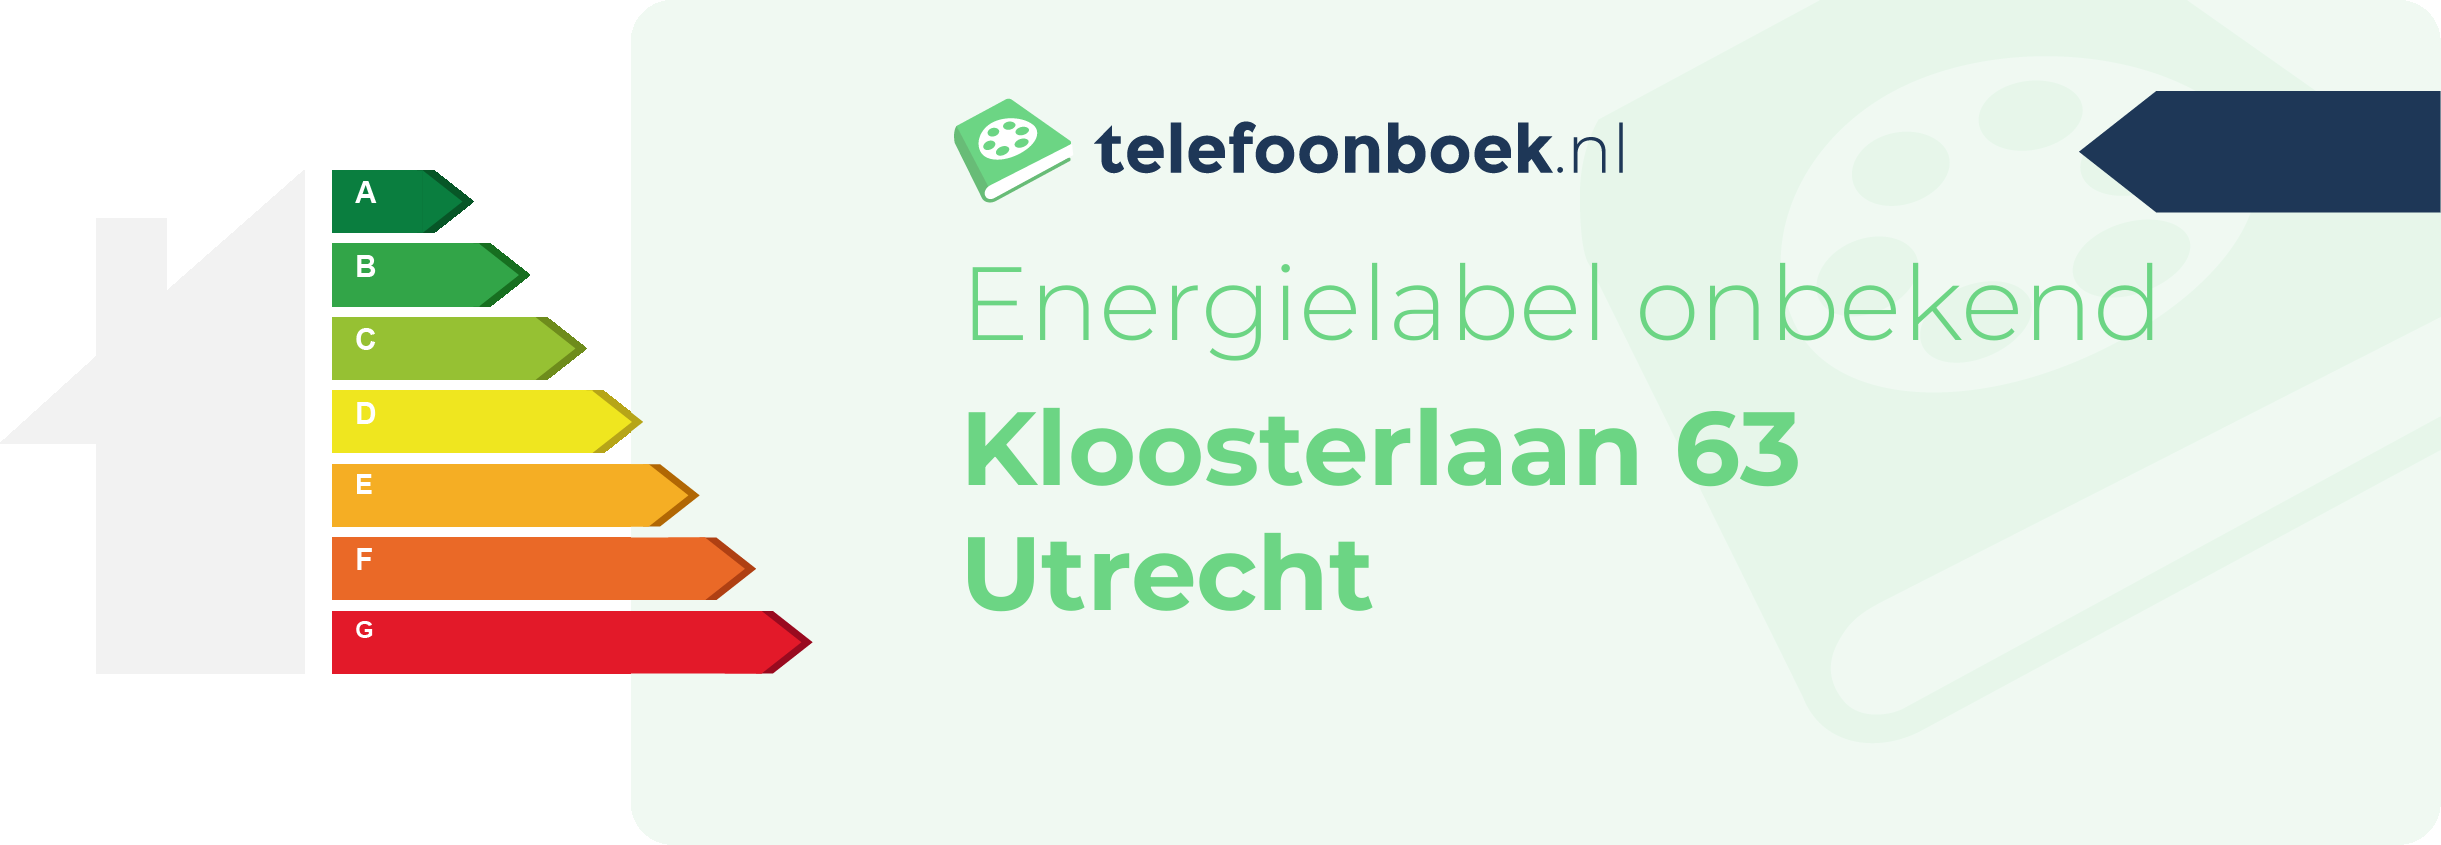 Energielabel Kloosterlaan 63 Utrecht